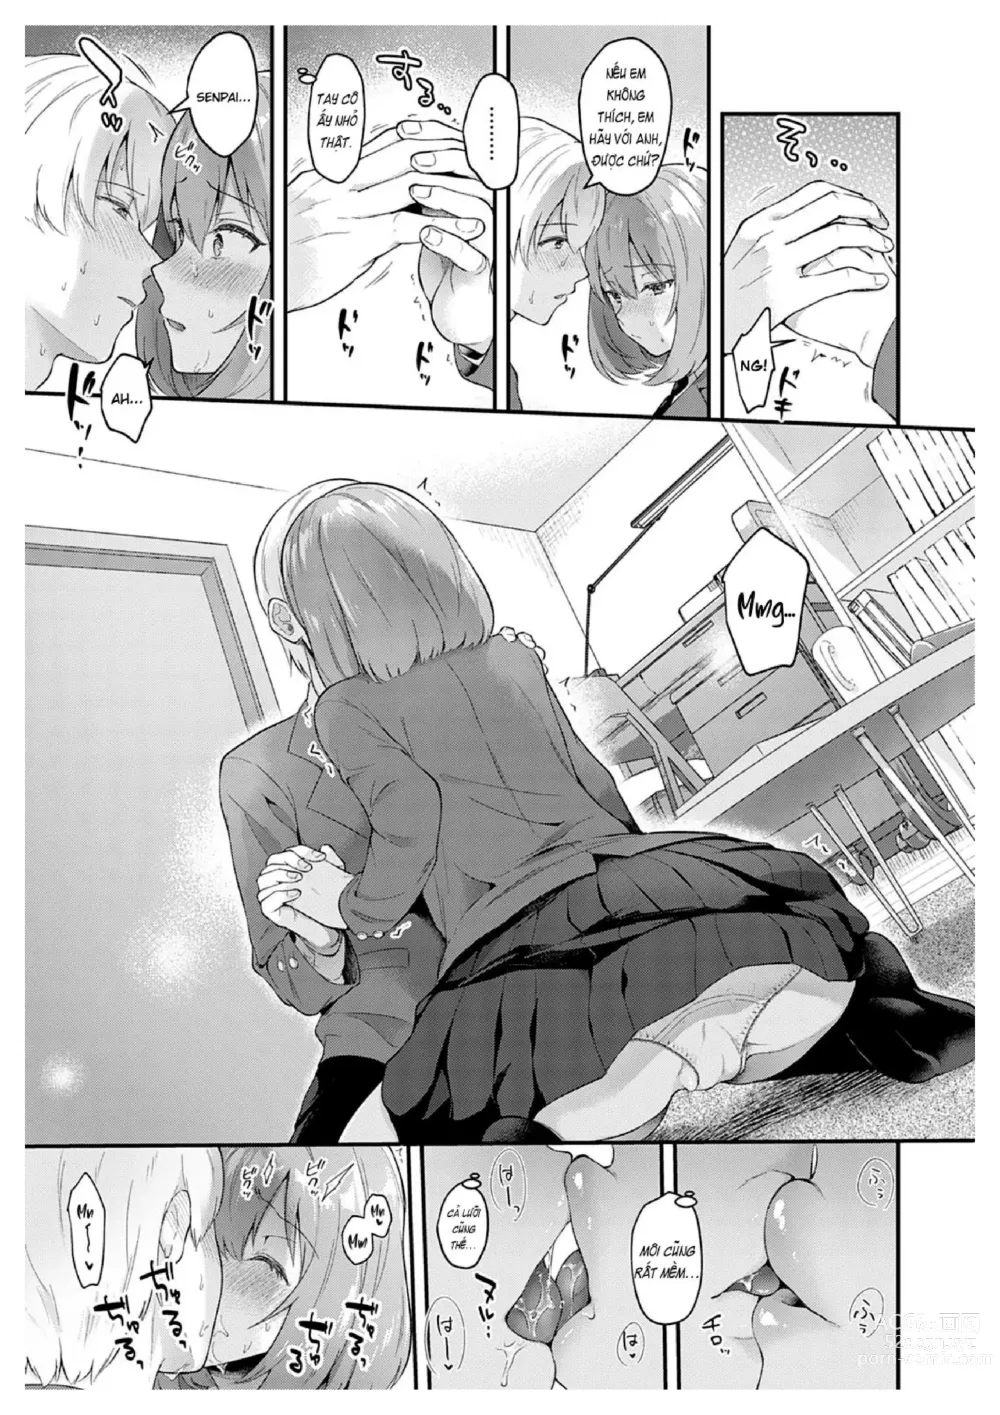 Page 7 of manga Kanojo Face